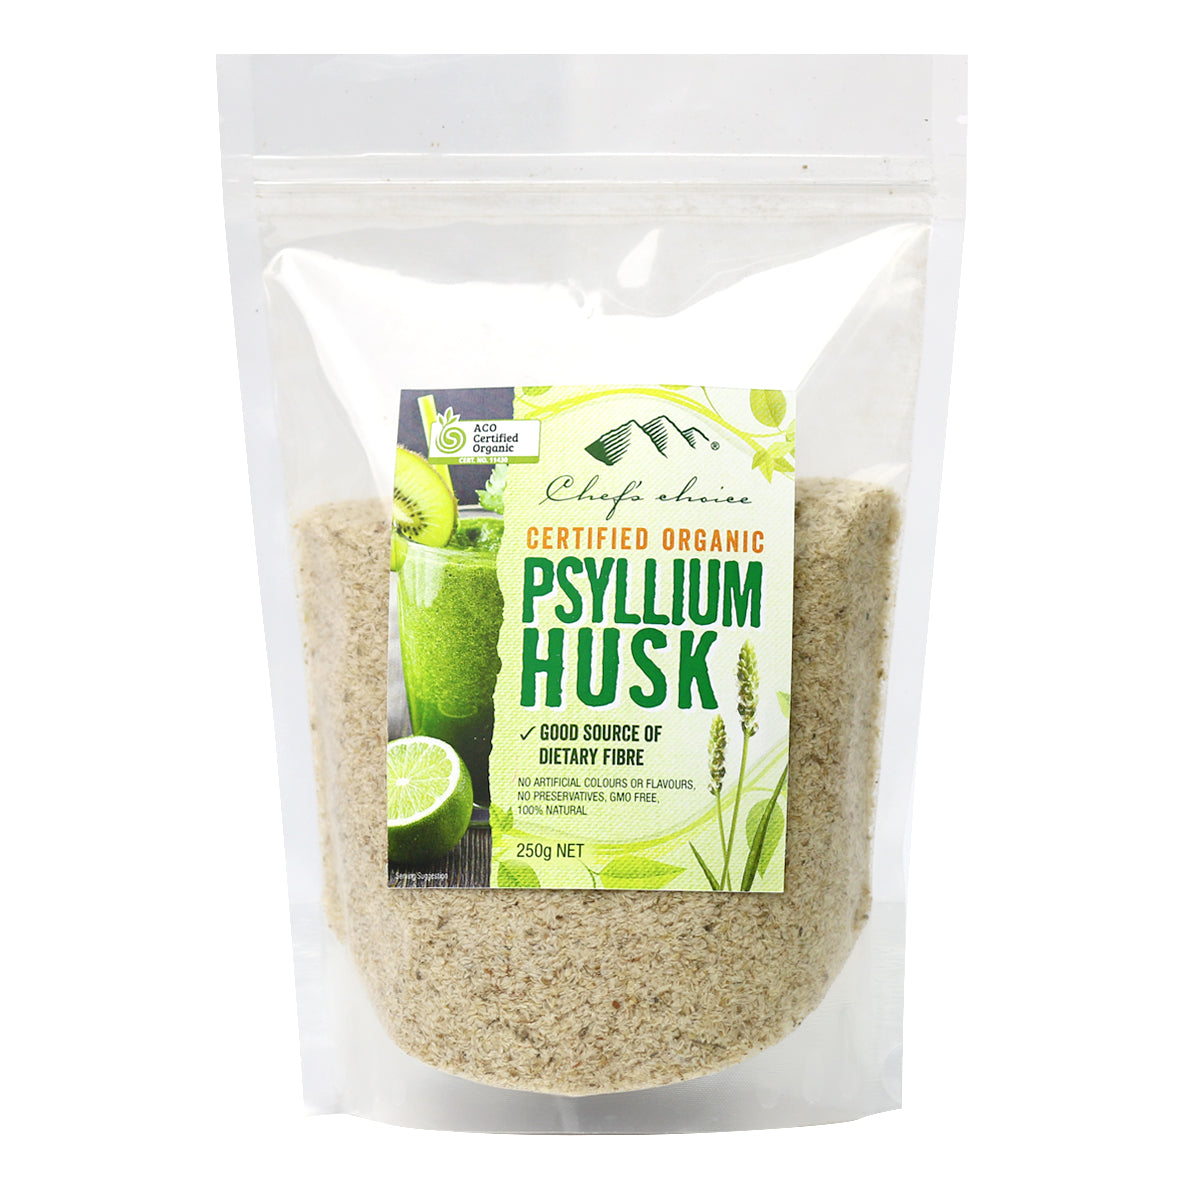 Chef's Choice Organic Psyllium Husk (250g)